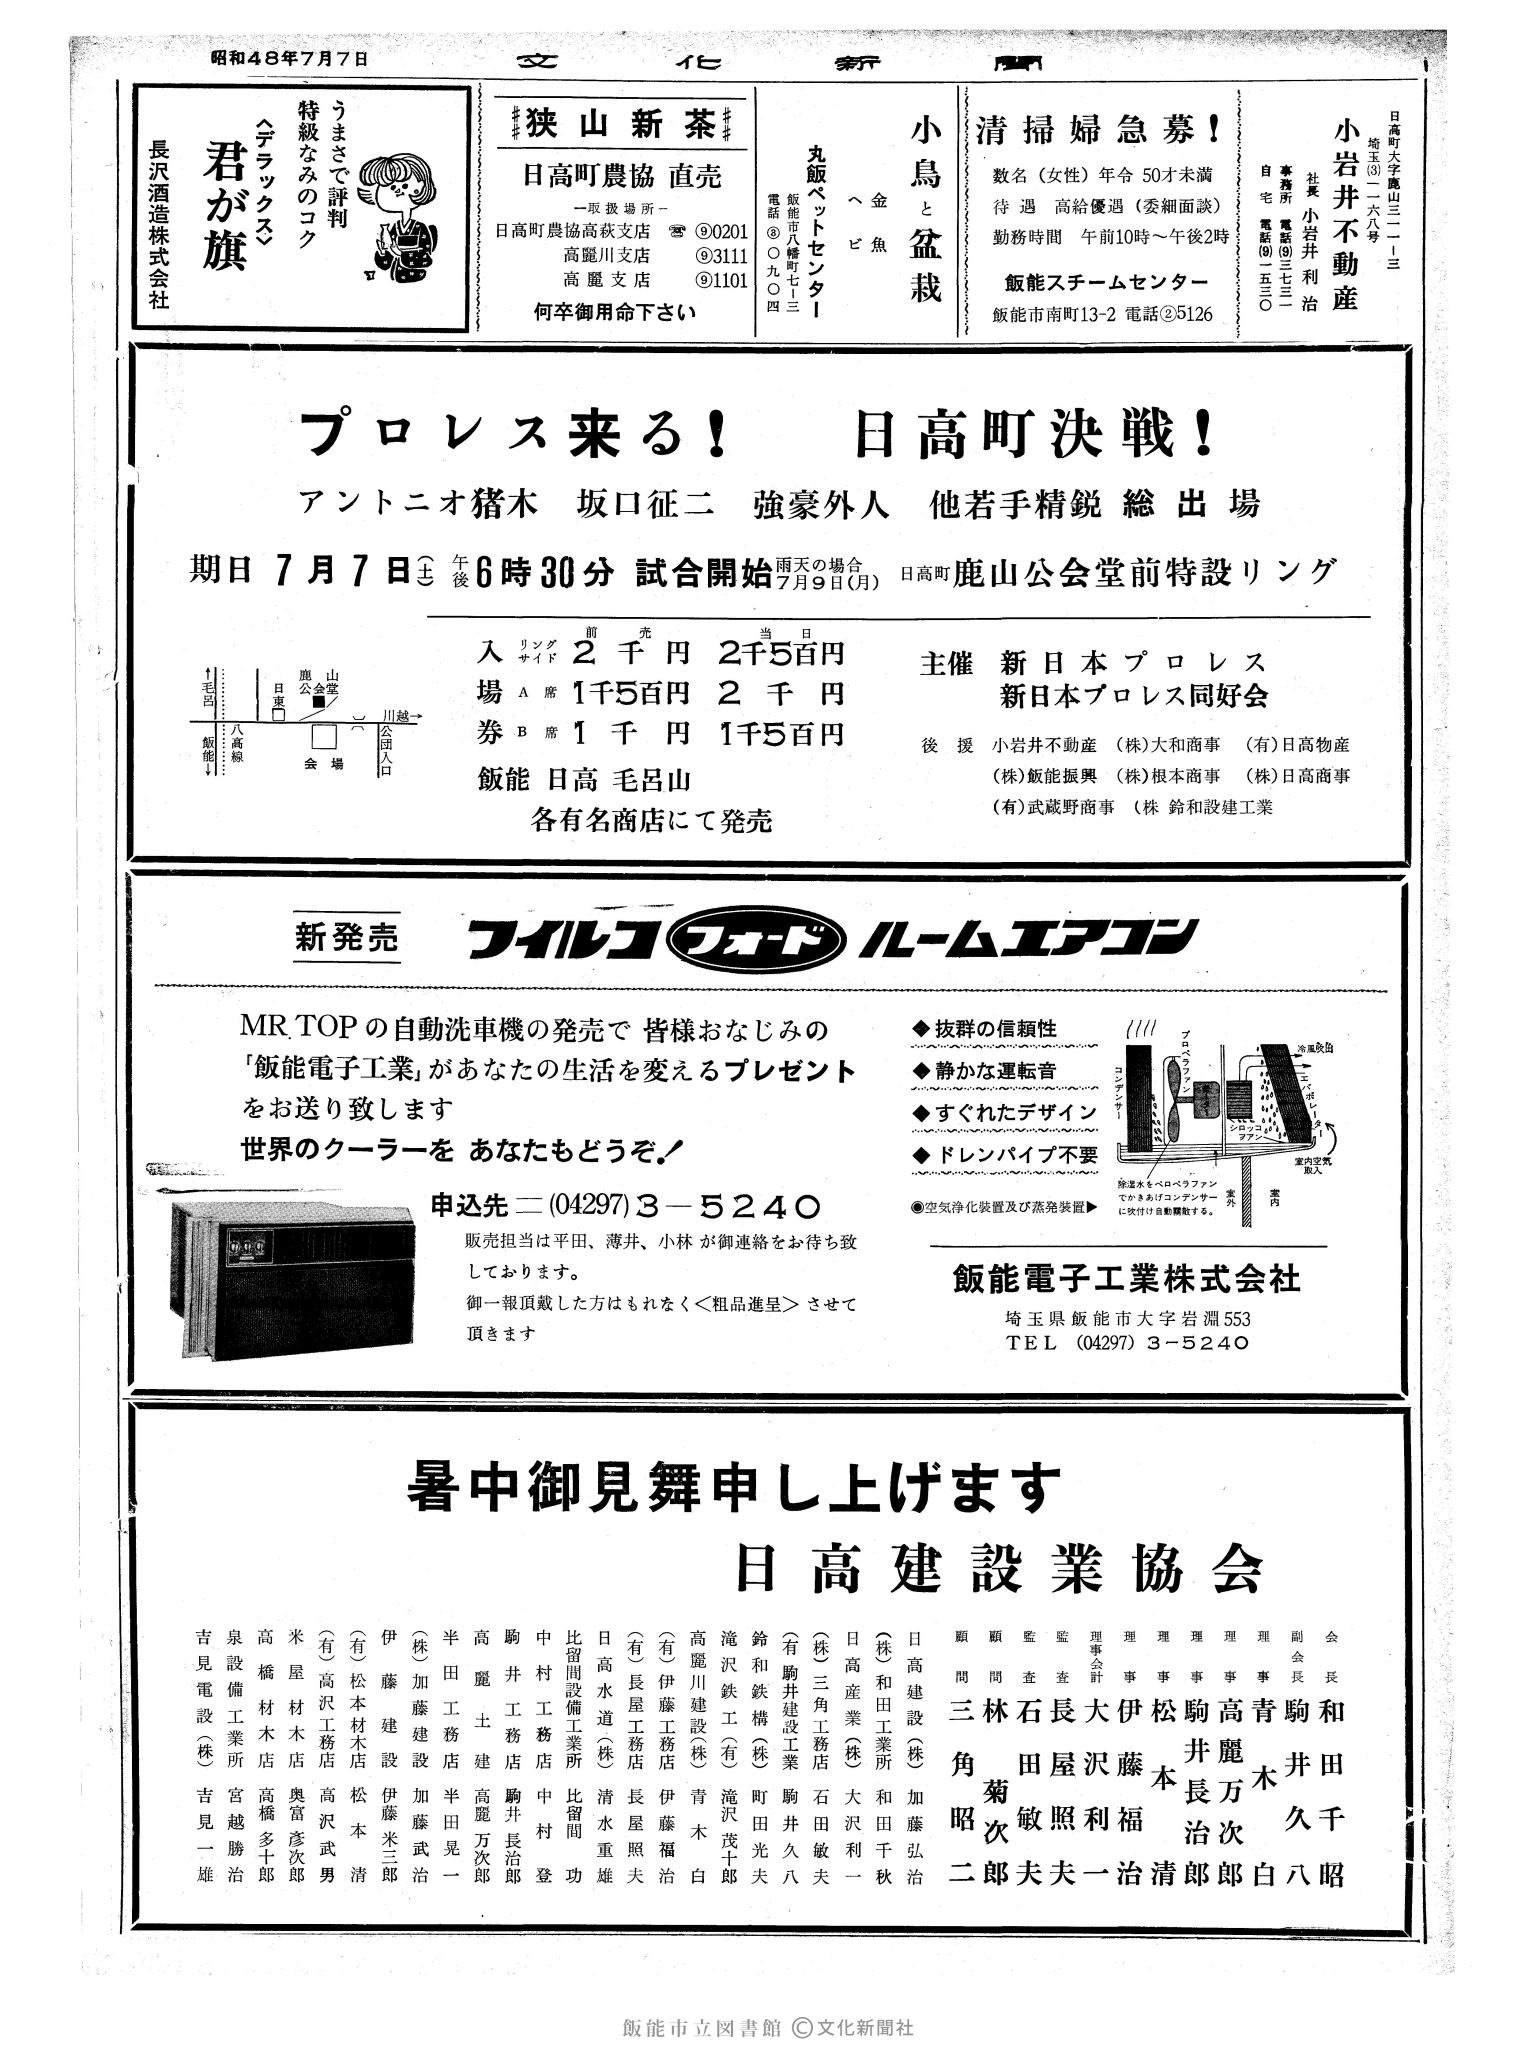 昭和48年7月7日2面 (第7576号) 広告ページ